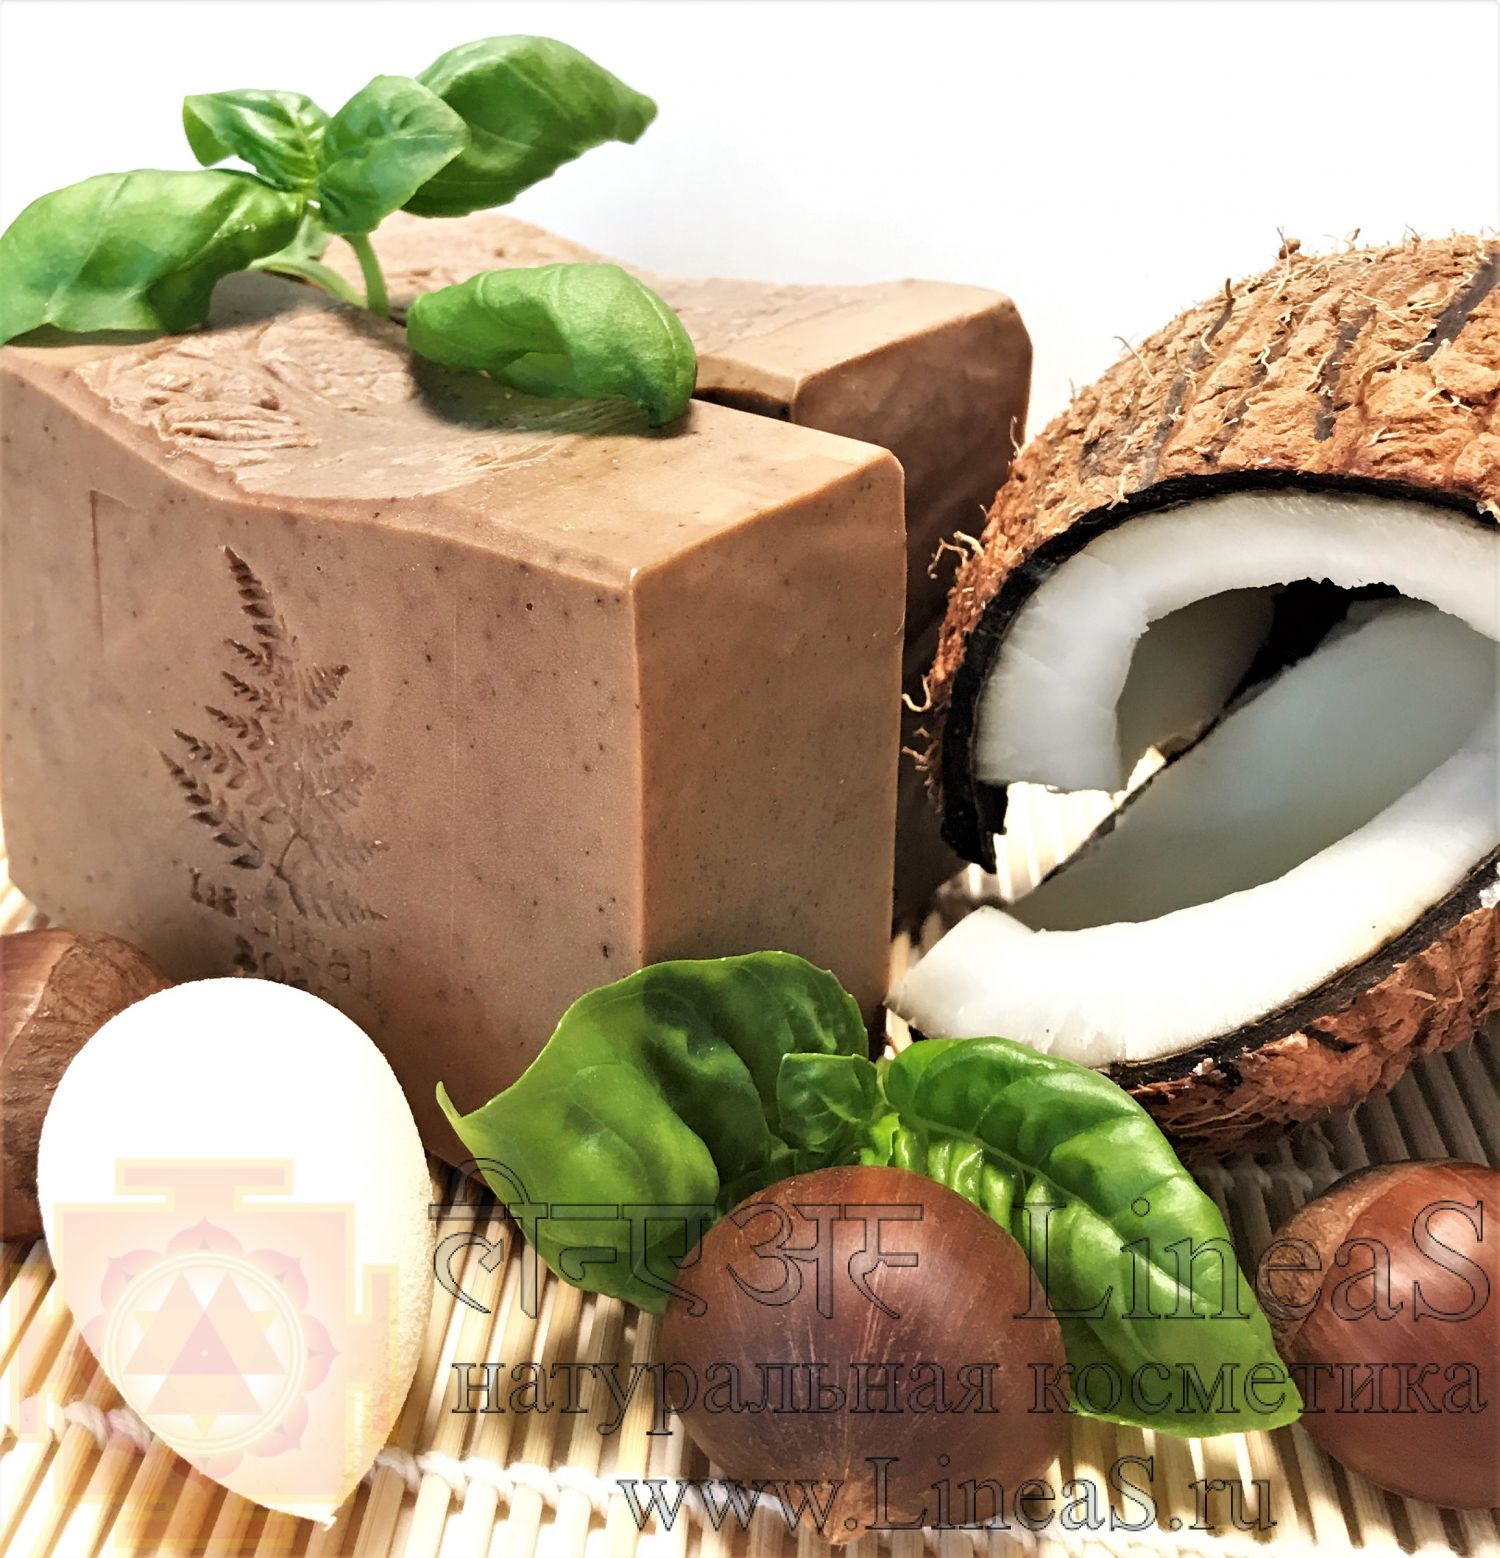 Березовая чага фито-мыло кокосовое для SPA-процедур